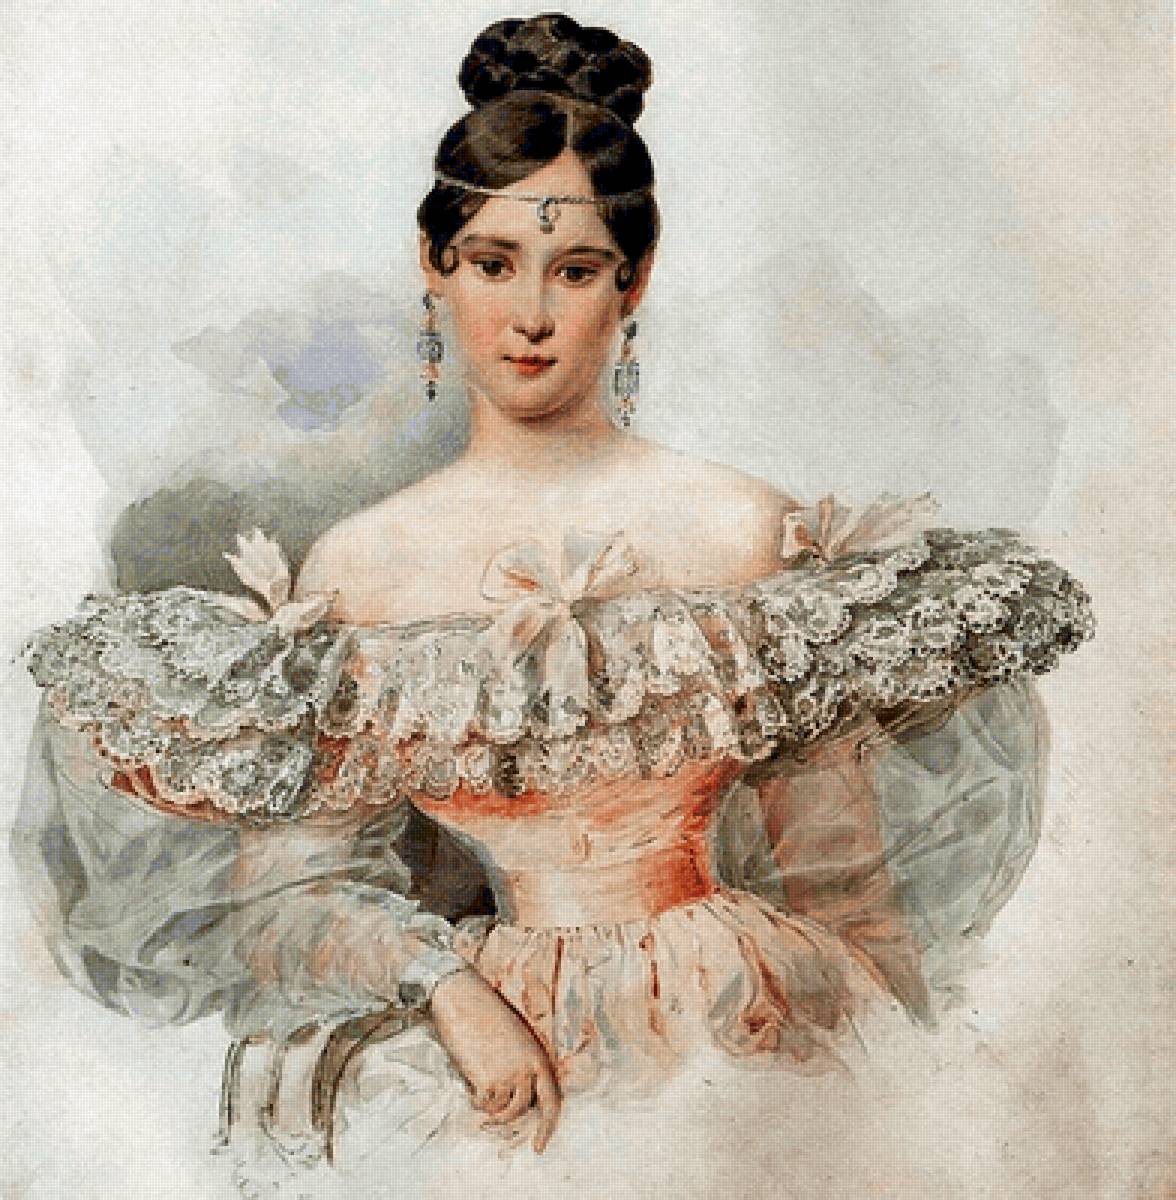 Карл Брюллов. Портрет Натальи Гончаровой - живопись, девушка, 19 век, портрет, женщина - предпросмотр